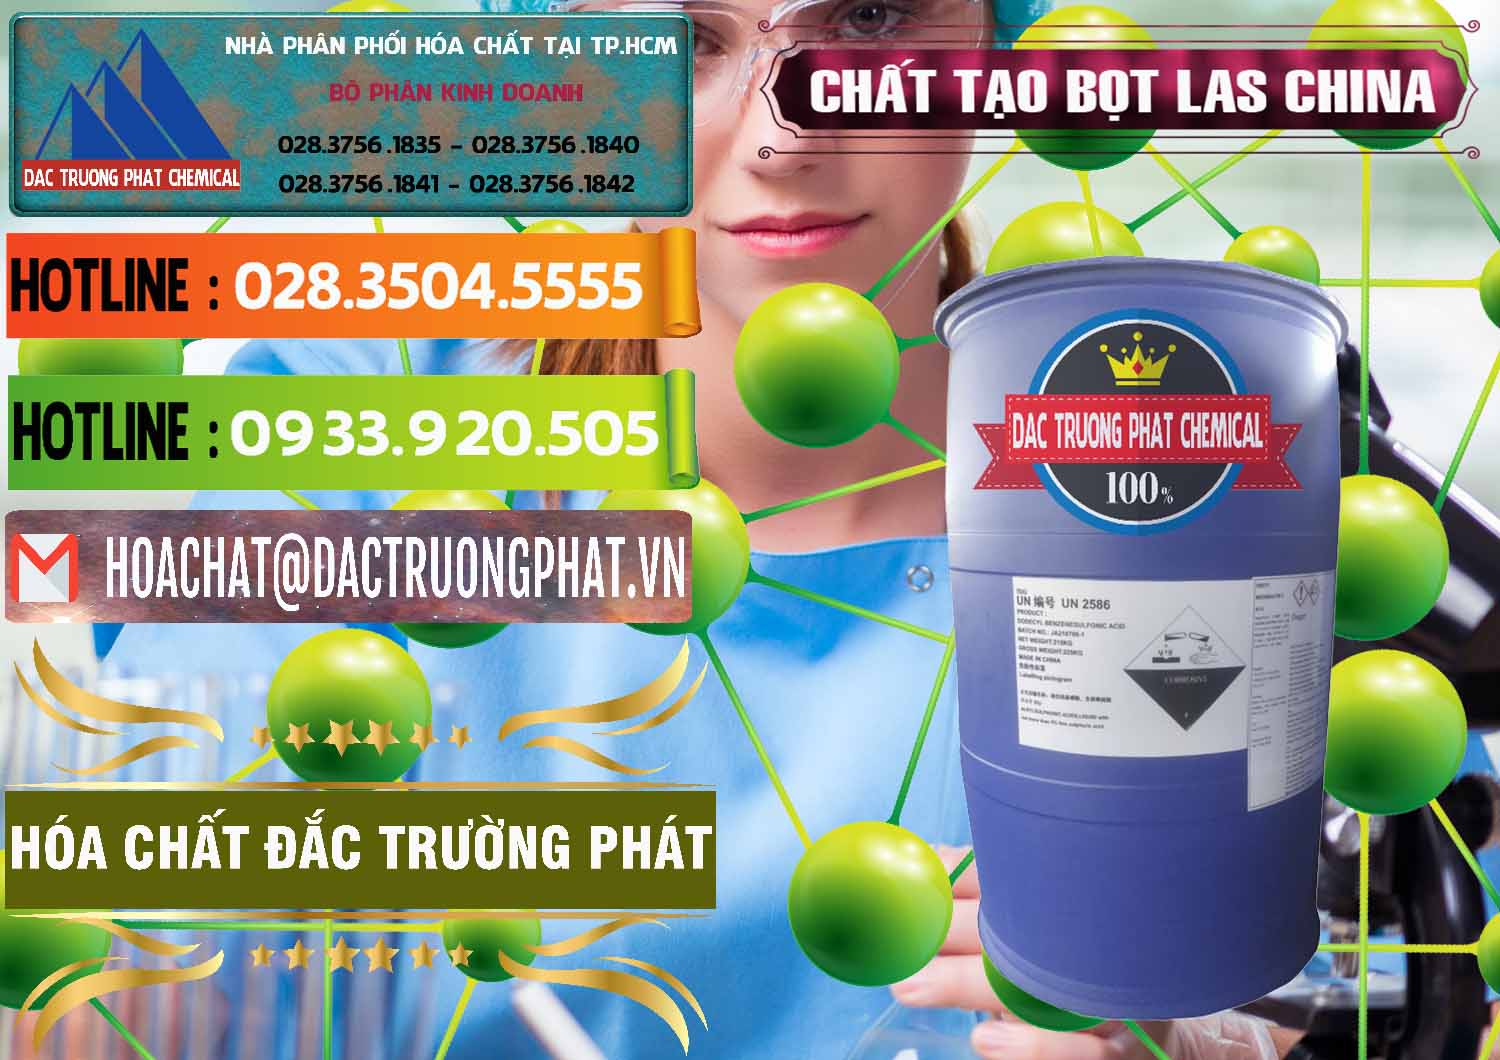 Chuyên phân phối và bán Chất tạo bọt Las Trung Quốc China - 0451 - Công ty chuyên phân phối - nhập khẩu hóa chất tại TP.HCM - cungcaphoachat.com.vn